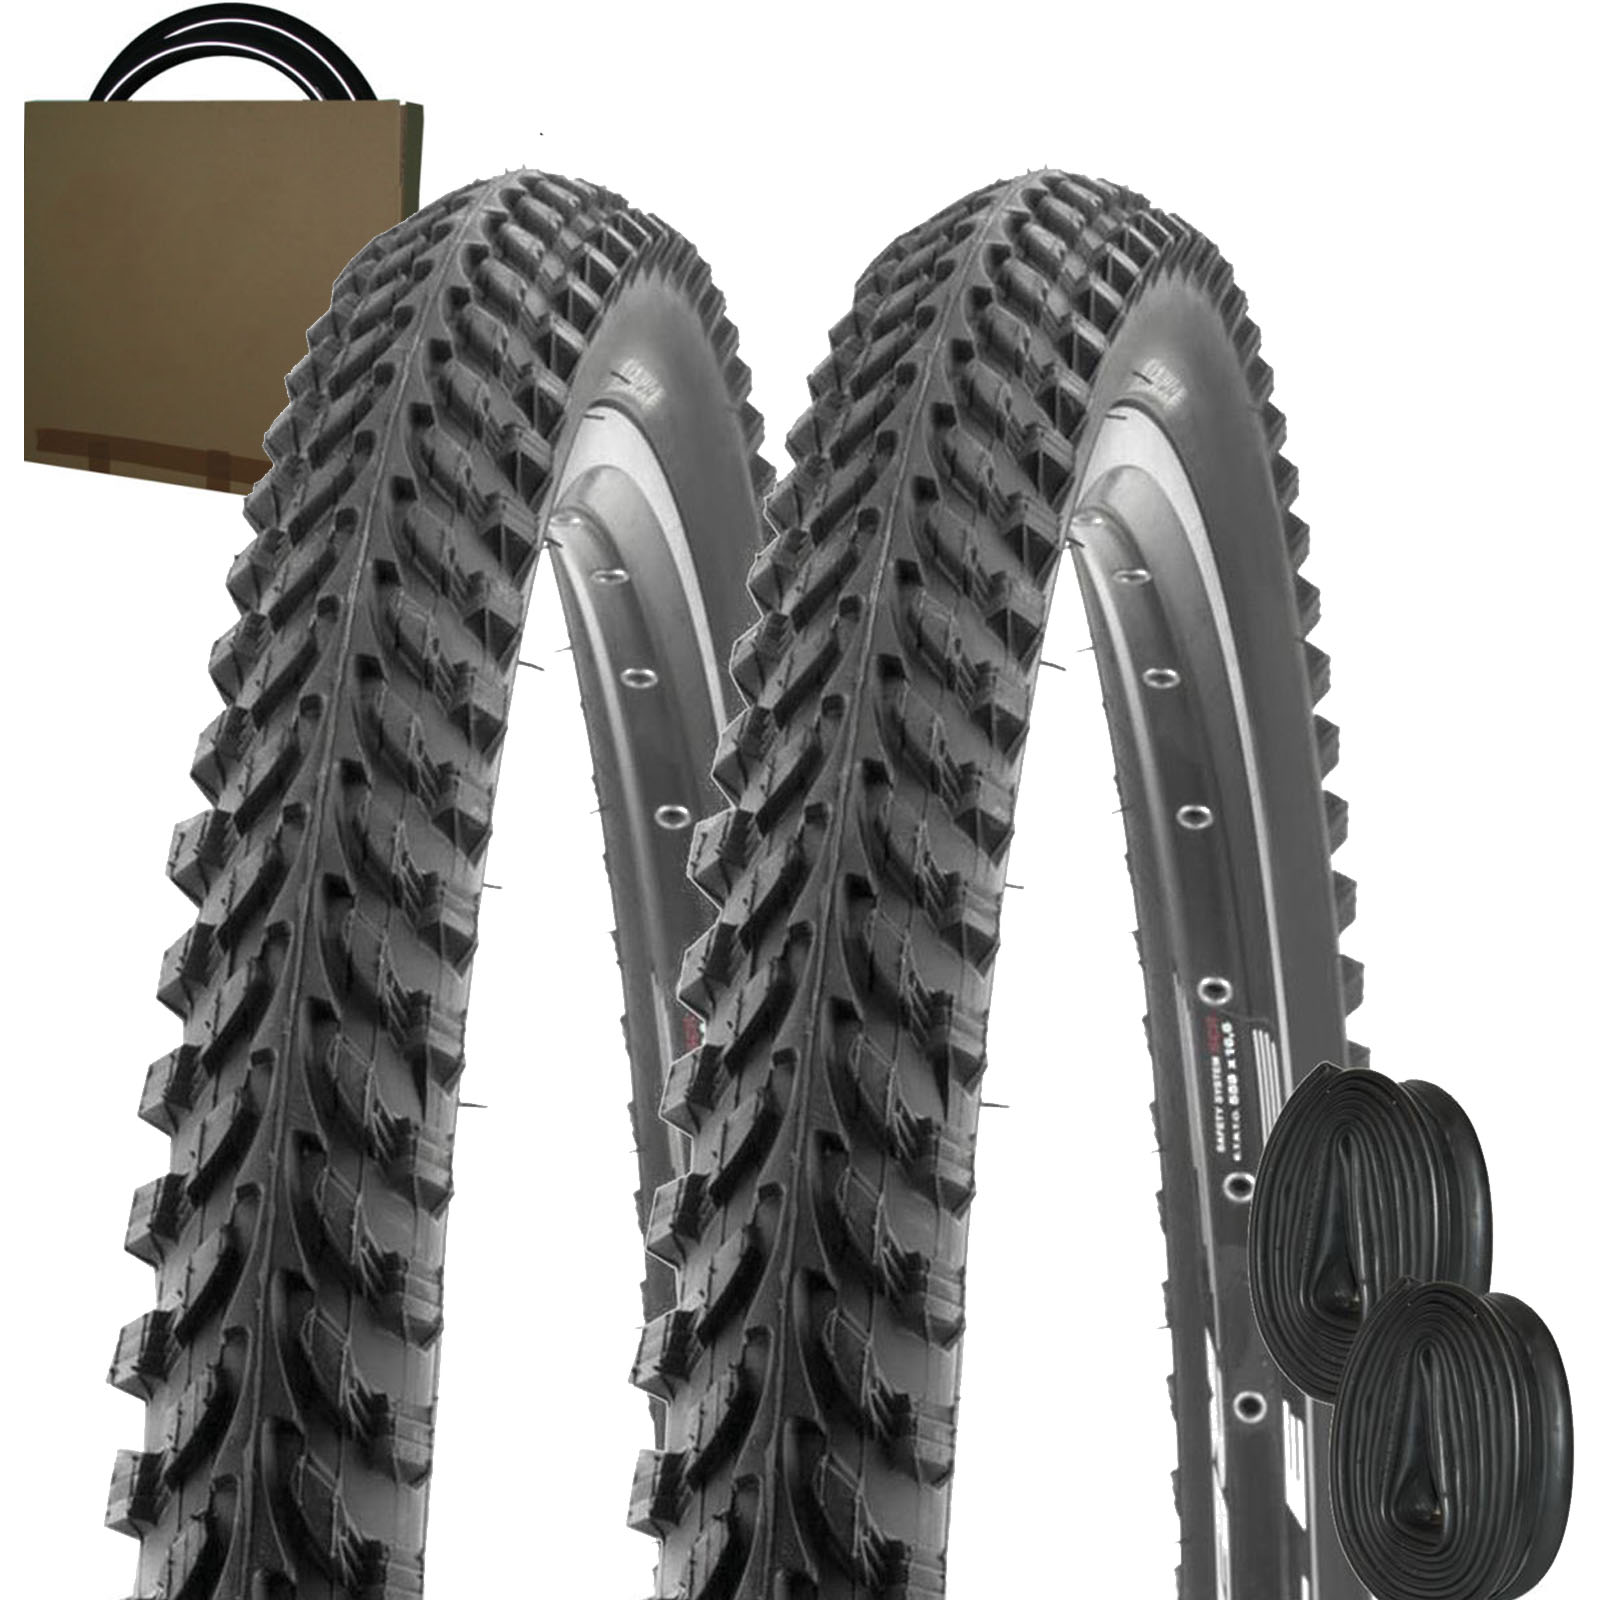 2x Kenda ATB Fahrrad Reifen K-898 20x2.00 | 50-406 schwarz ohne Schlauch